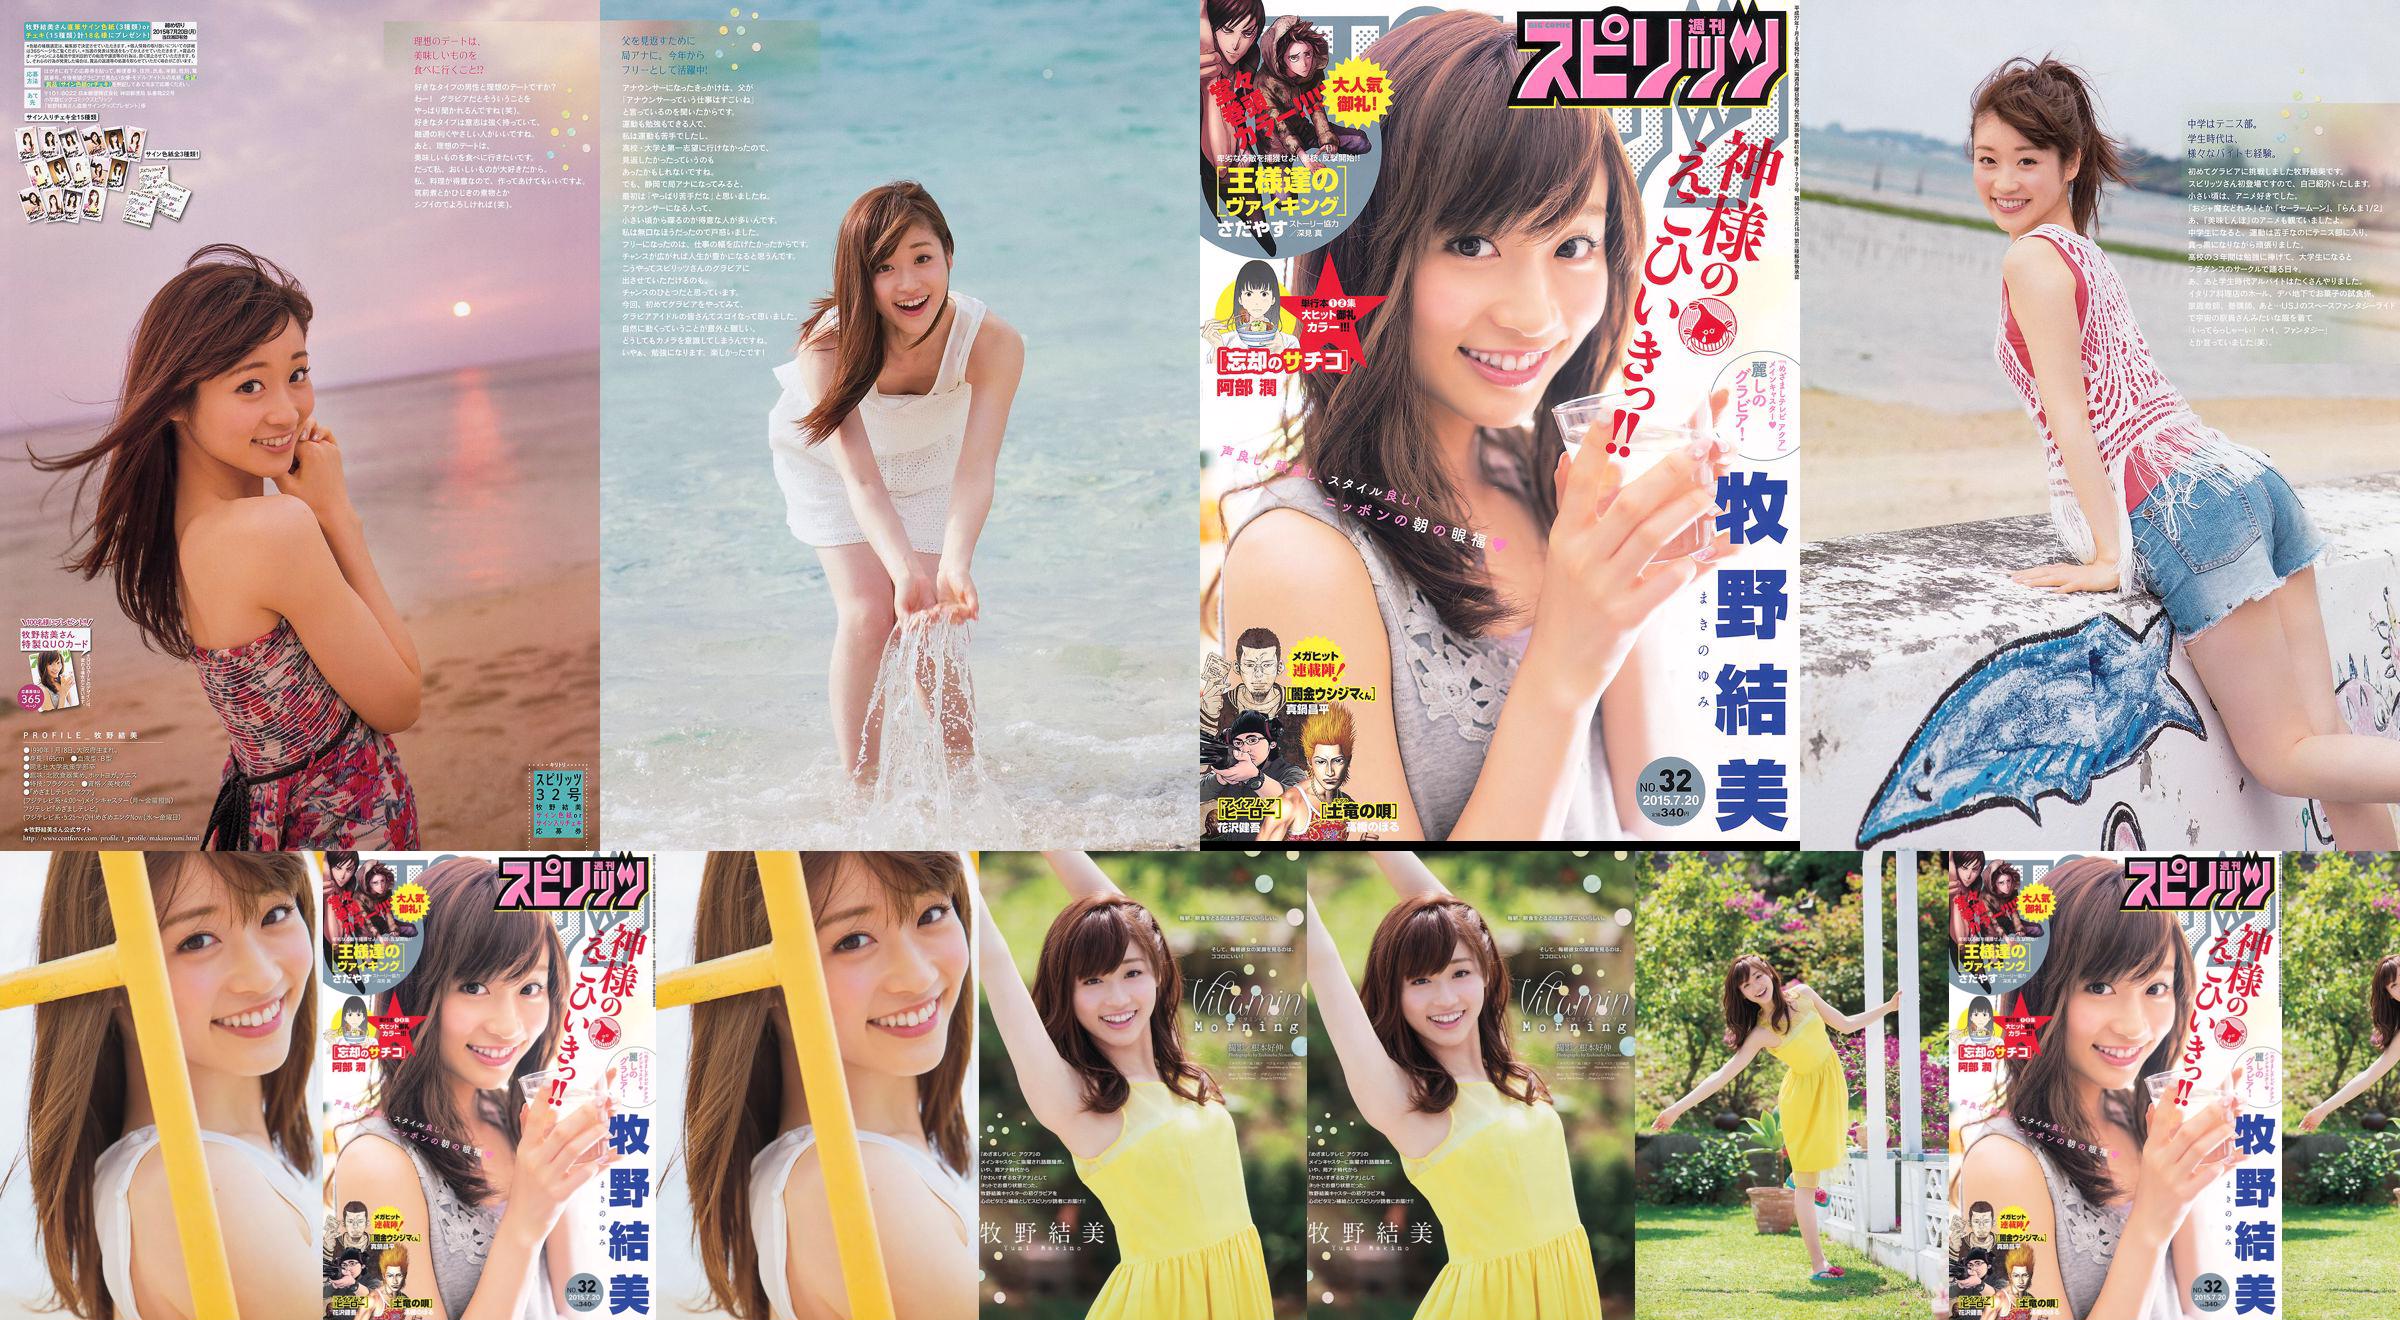 [Weekly Big Comic Spirits] Yumi Makino 2015 No.32 Photo Magazine No.252082 Page 1